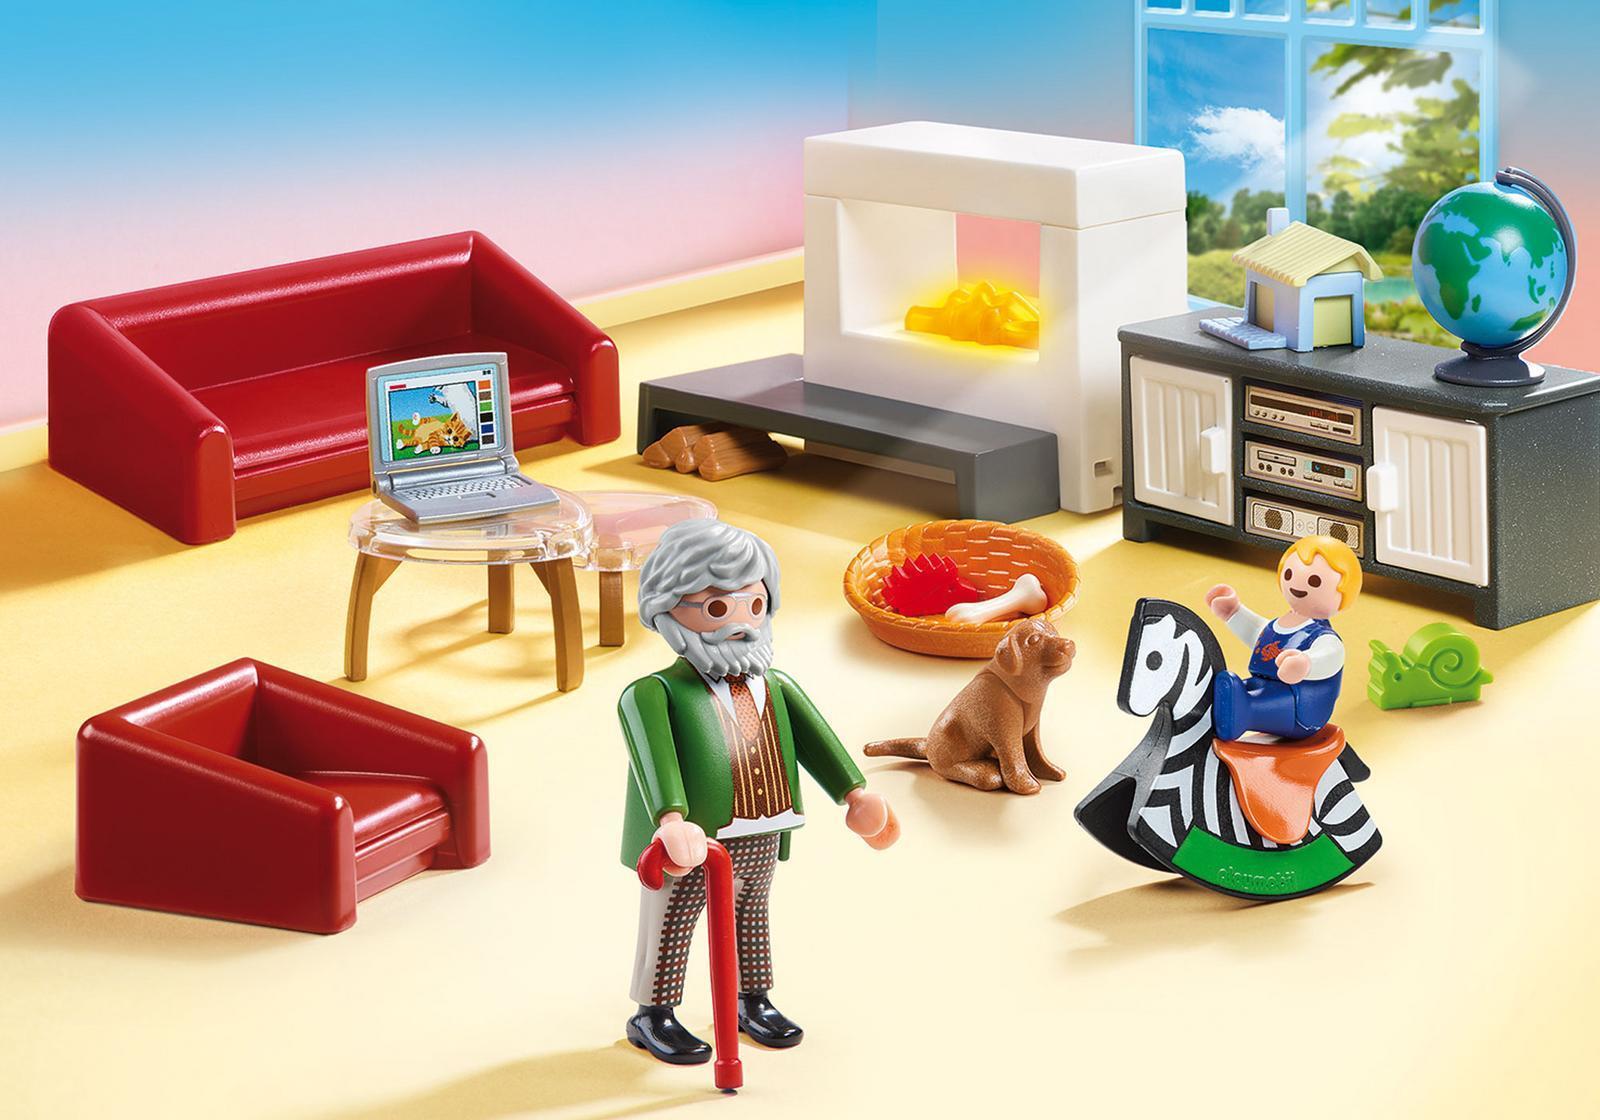 Playmobil Dollhouse 70207 - Aktion/Abenteuer - Junge/M�dchen - 4 Jahr(e) - Mehrfarben (70207) von Playmobil